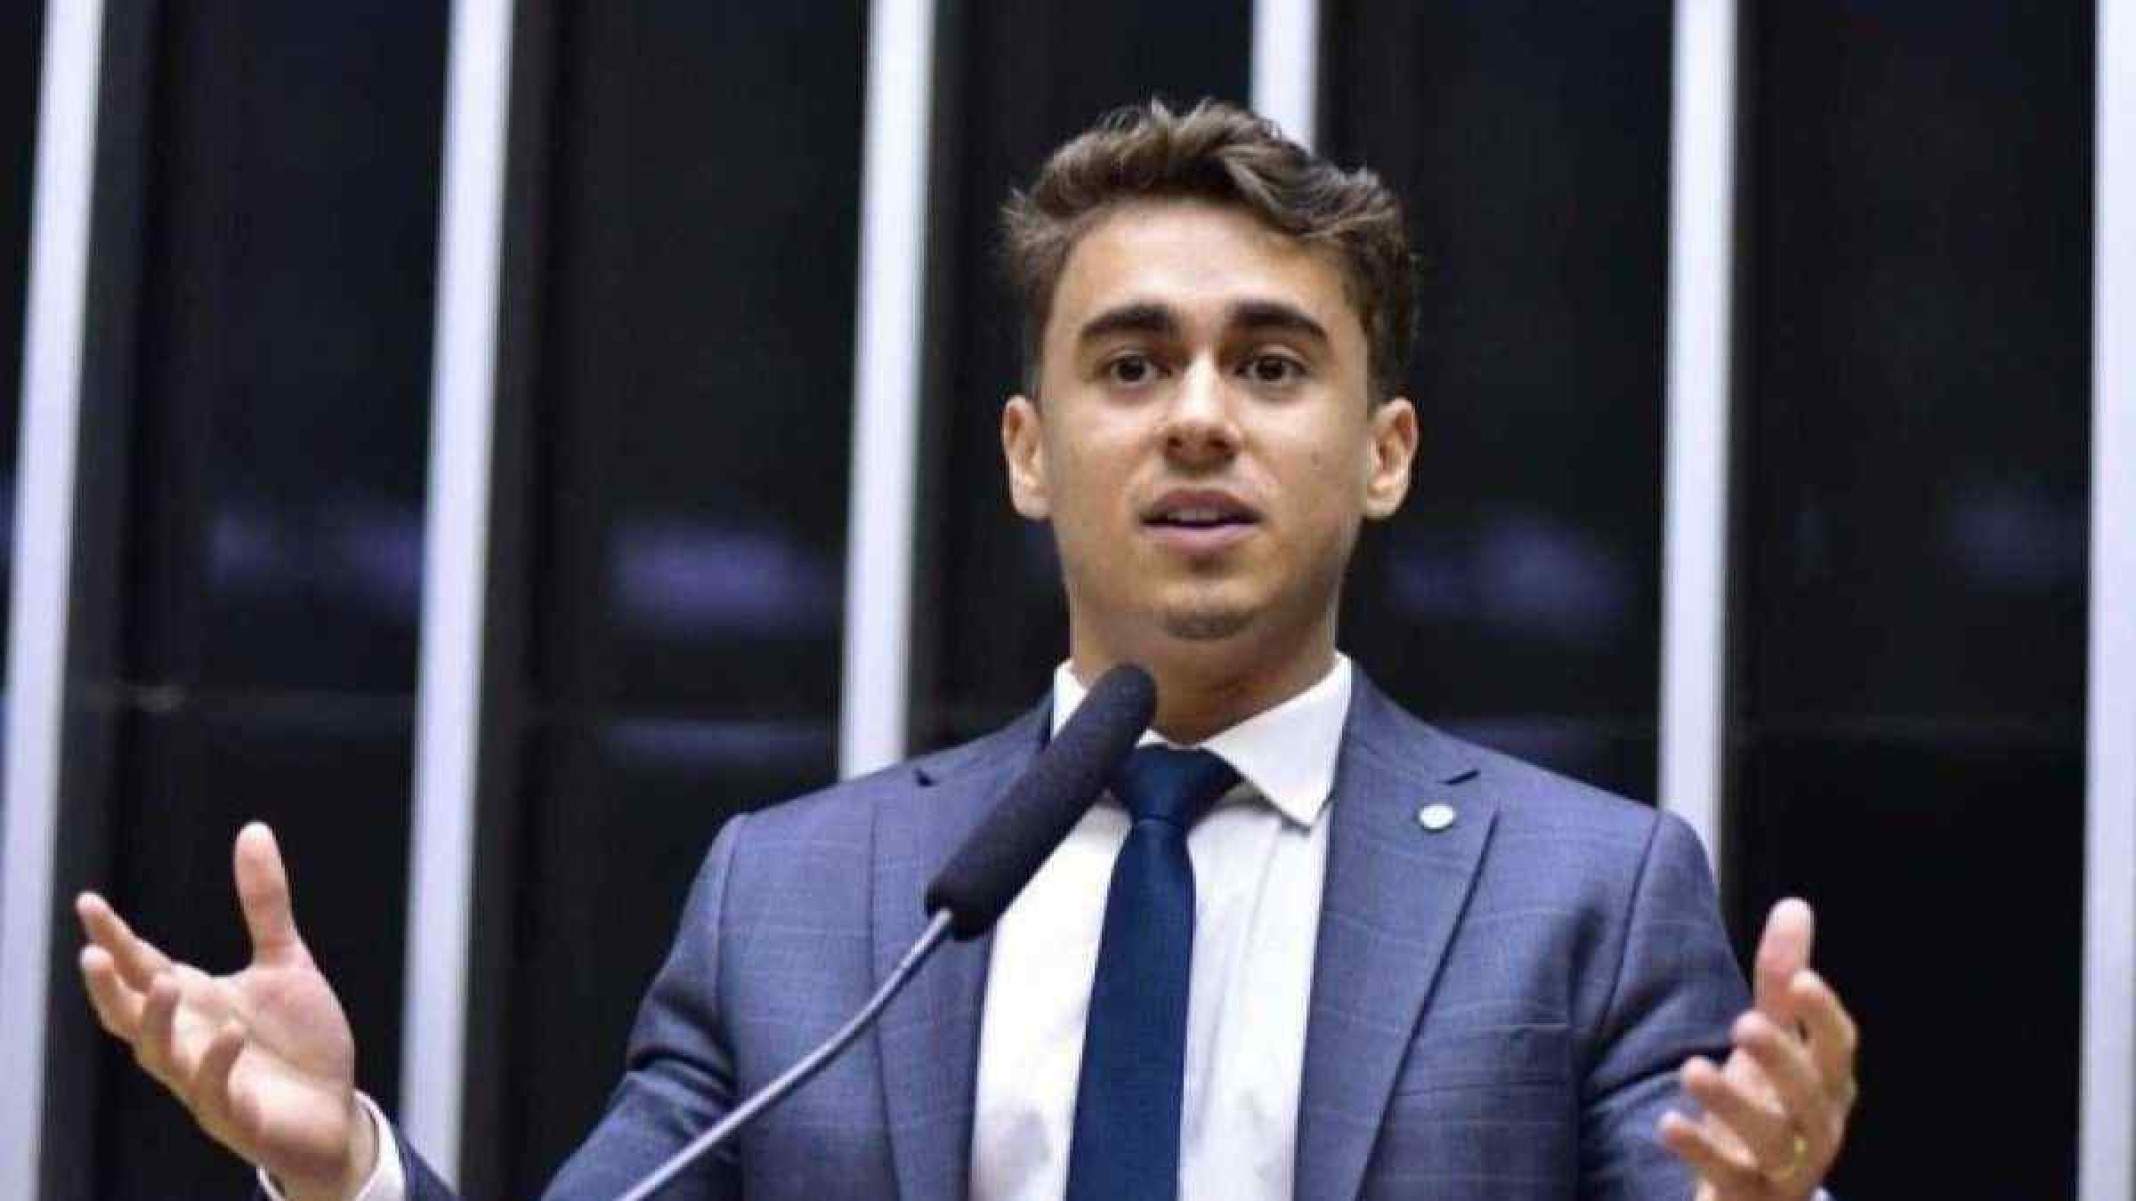 Nikolas diz que prioridade de Moraes é 'criminalizar a direita'